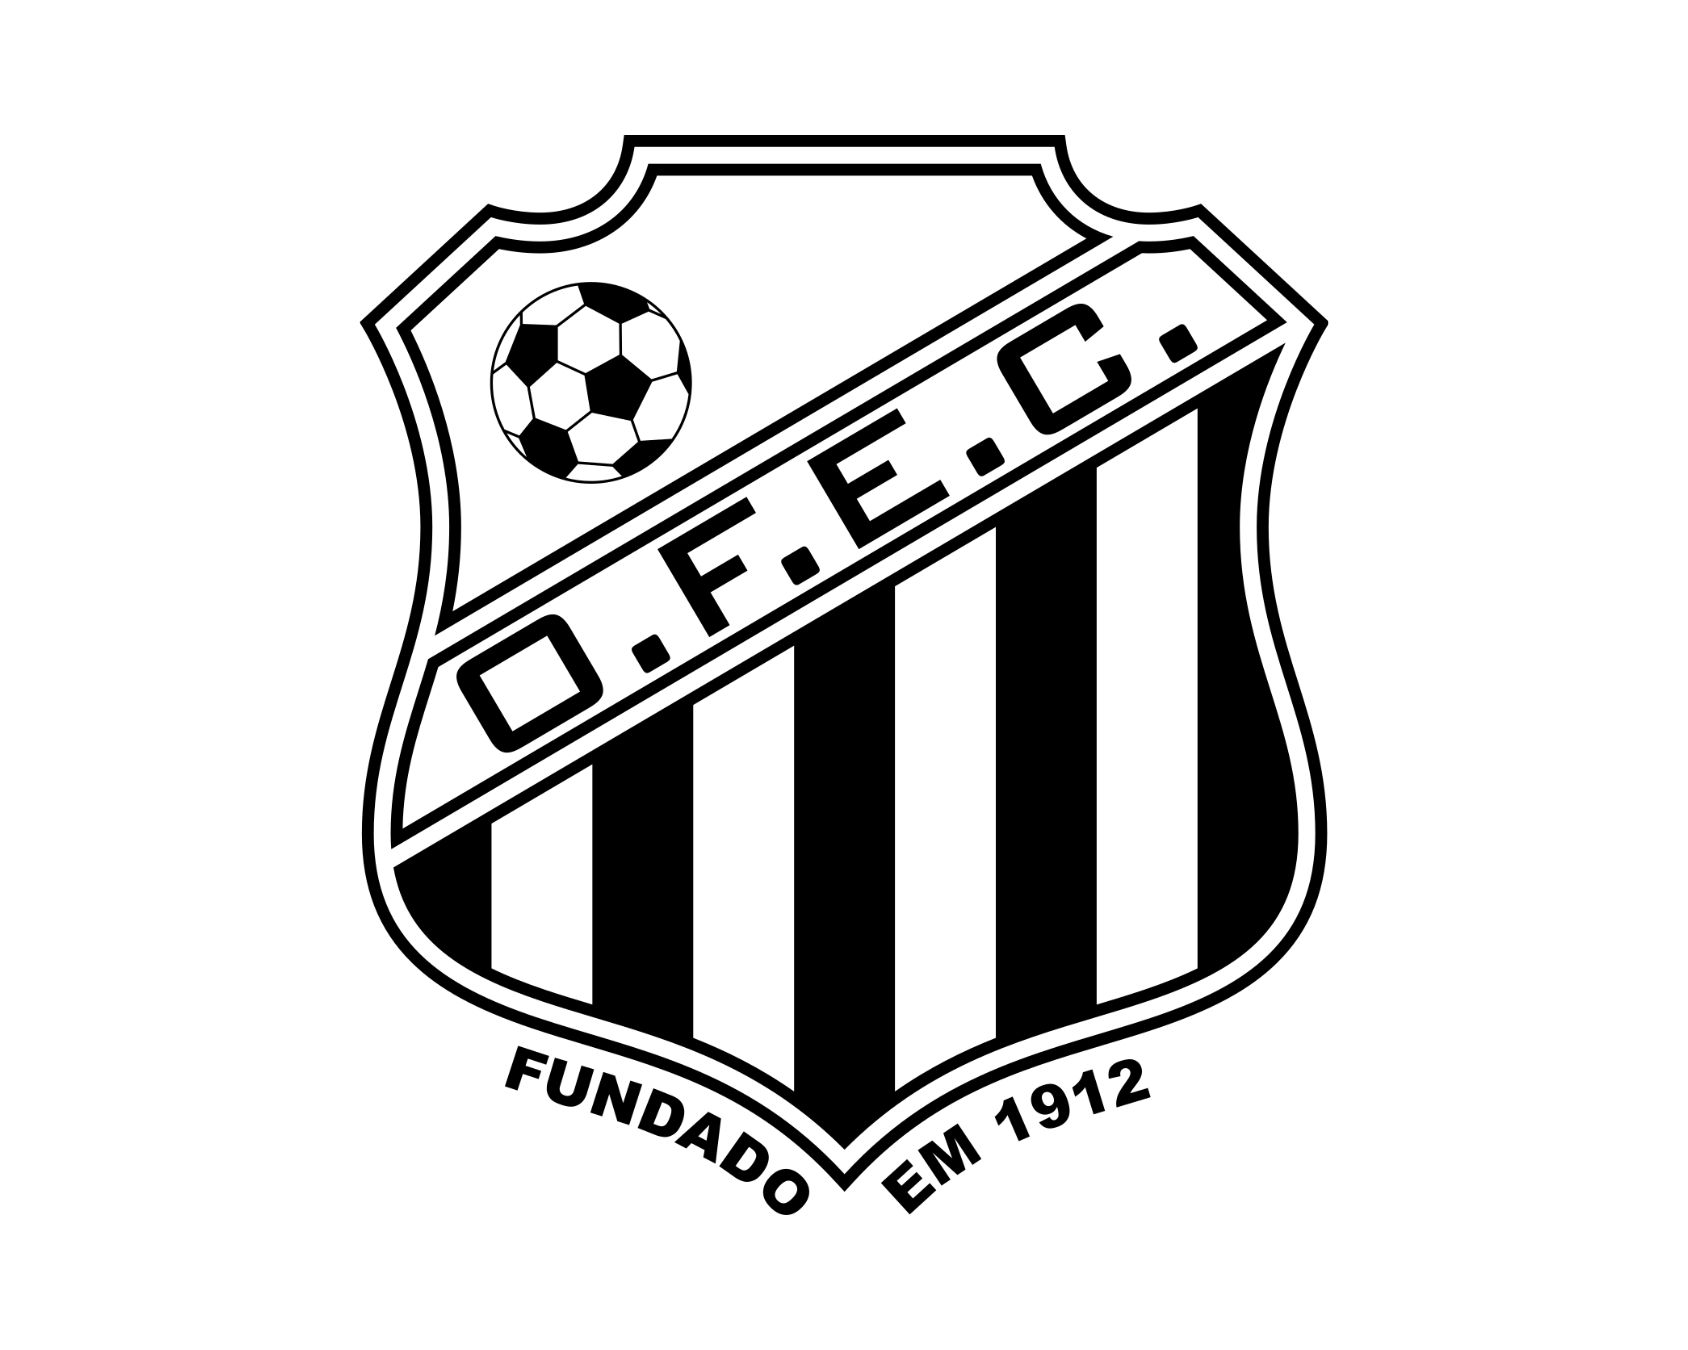 operario-ferroviario-esporte-clube-22-football-club-facts